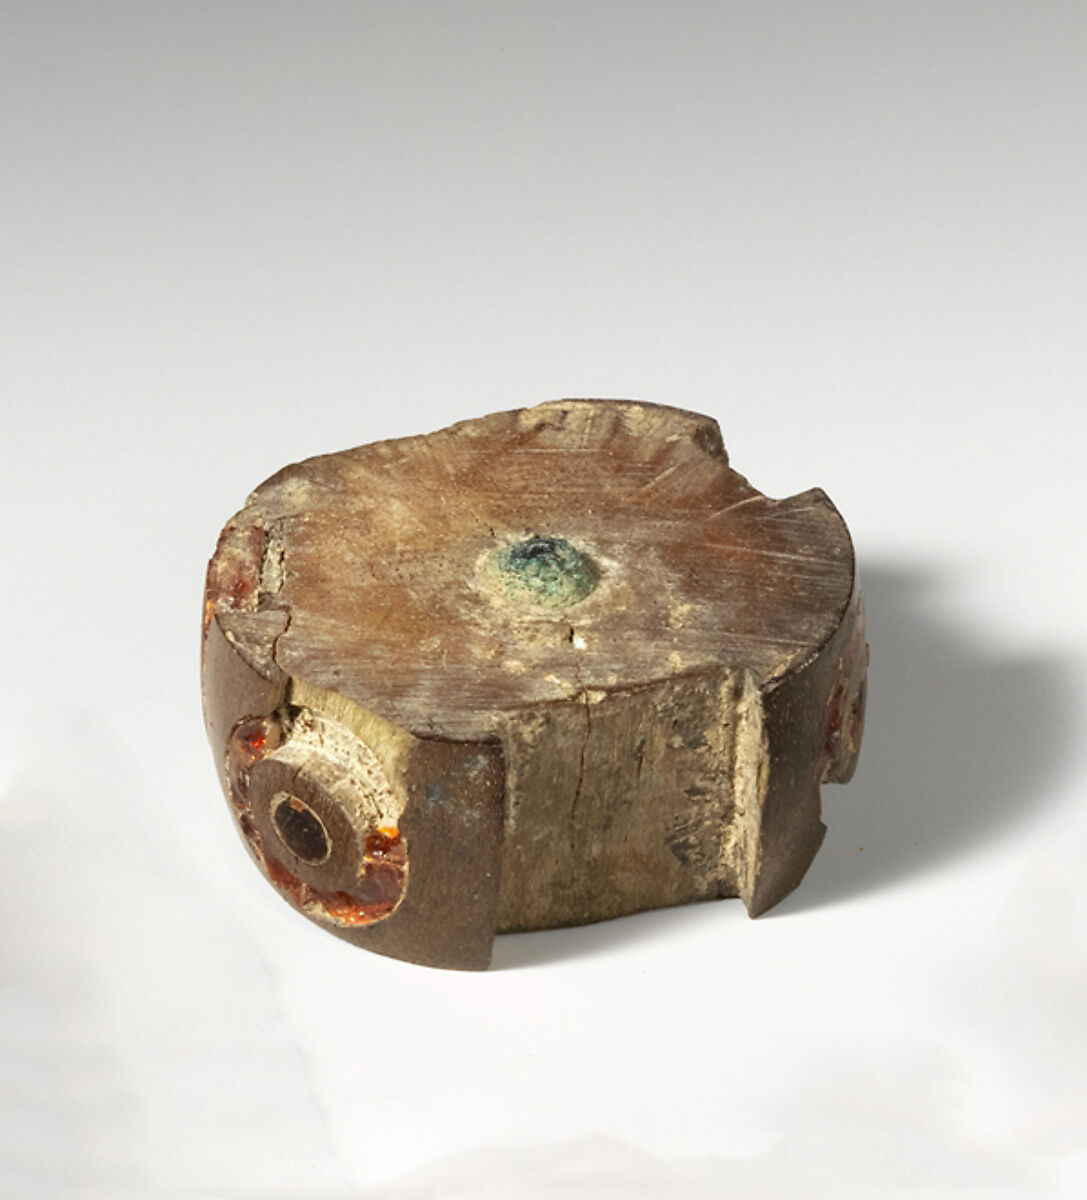 Bone and amber segment from a fibula (safety pin), Amber, bone, Etruscan 